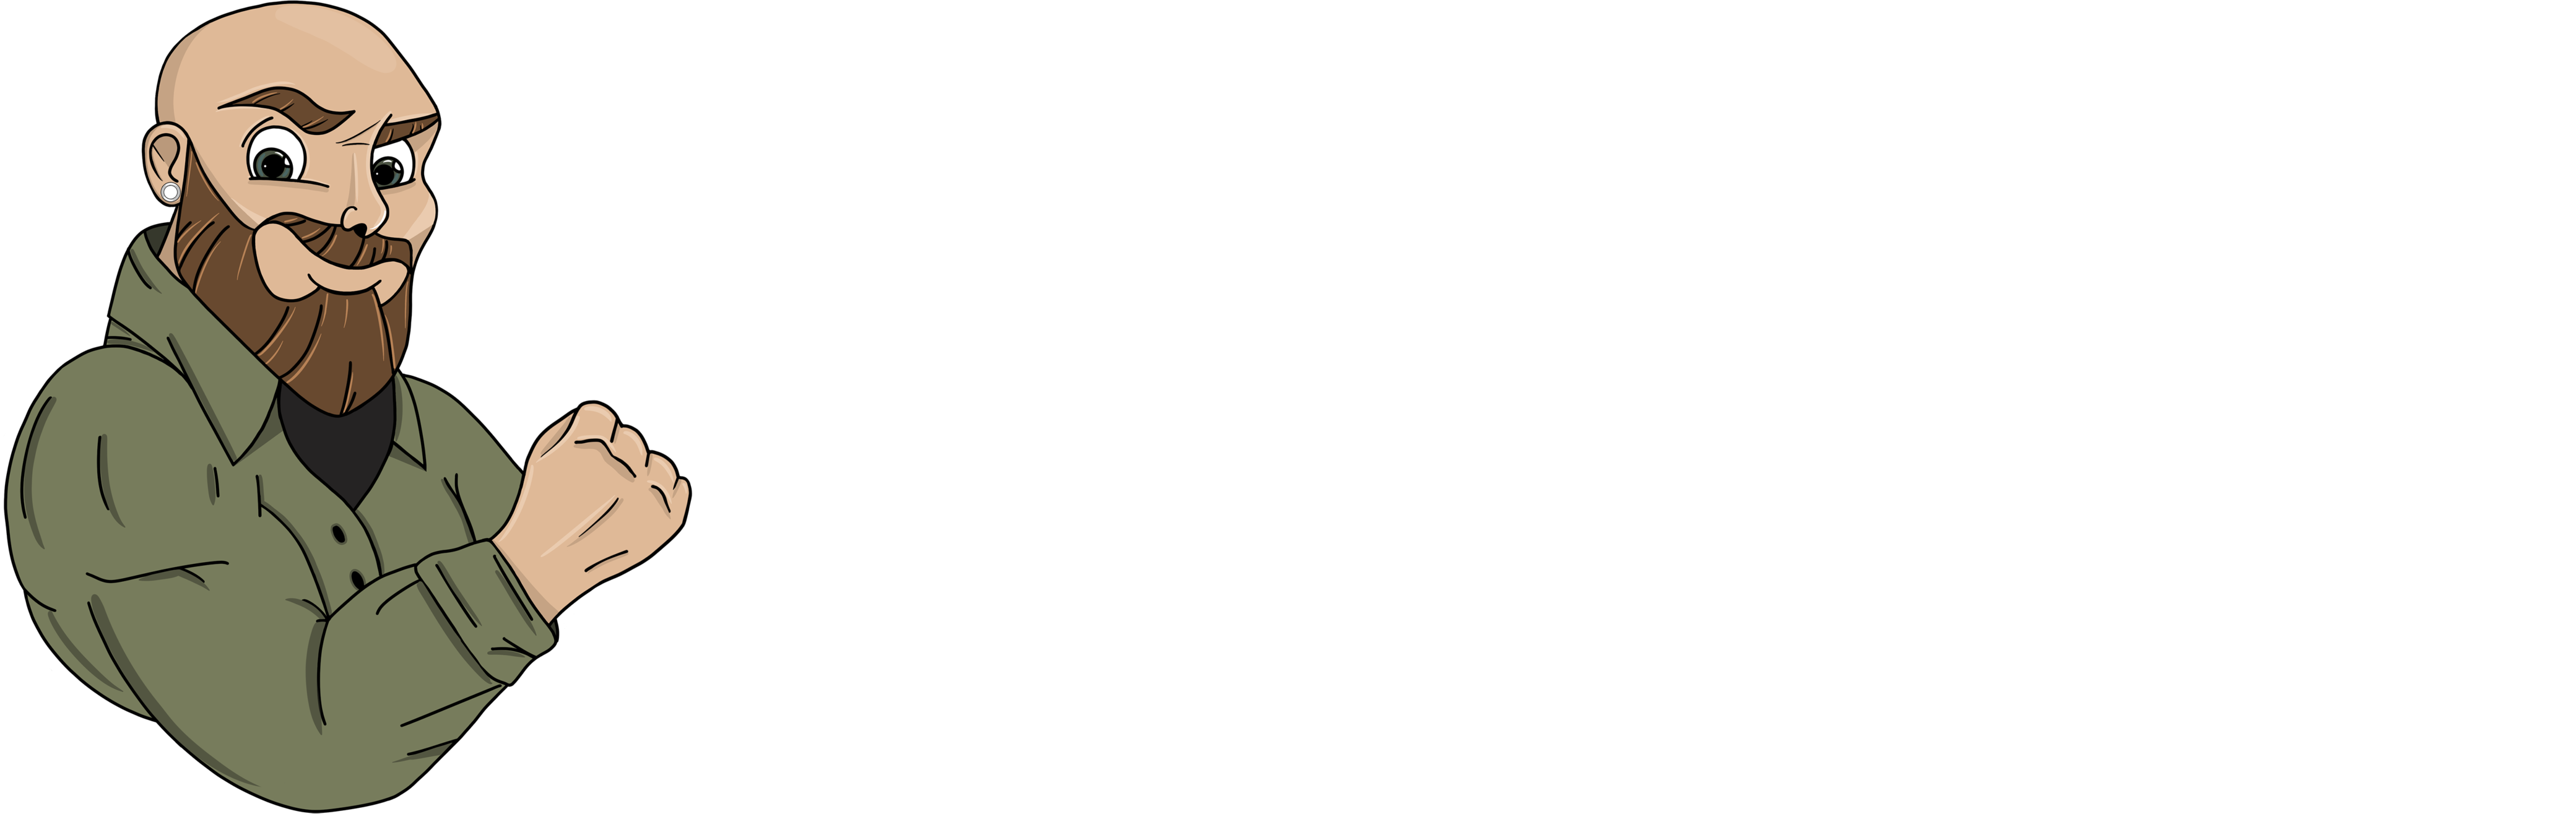 Benny Steddin Logo